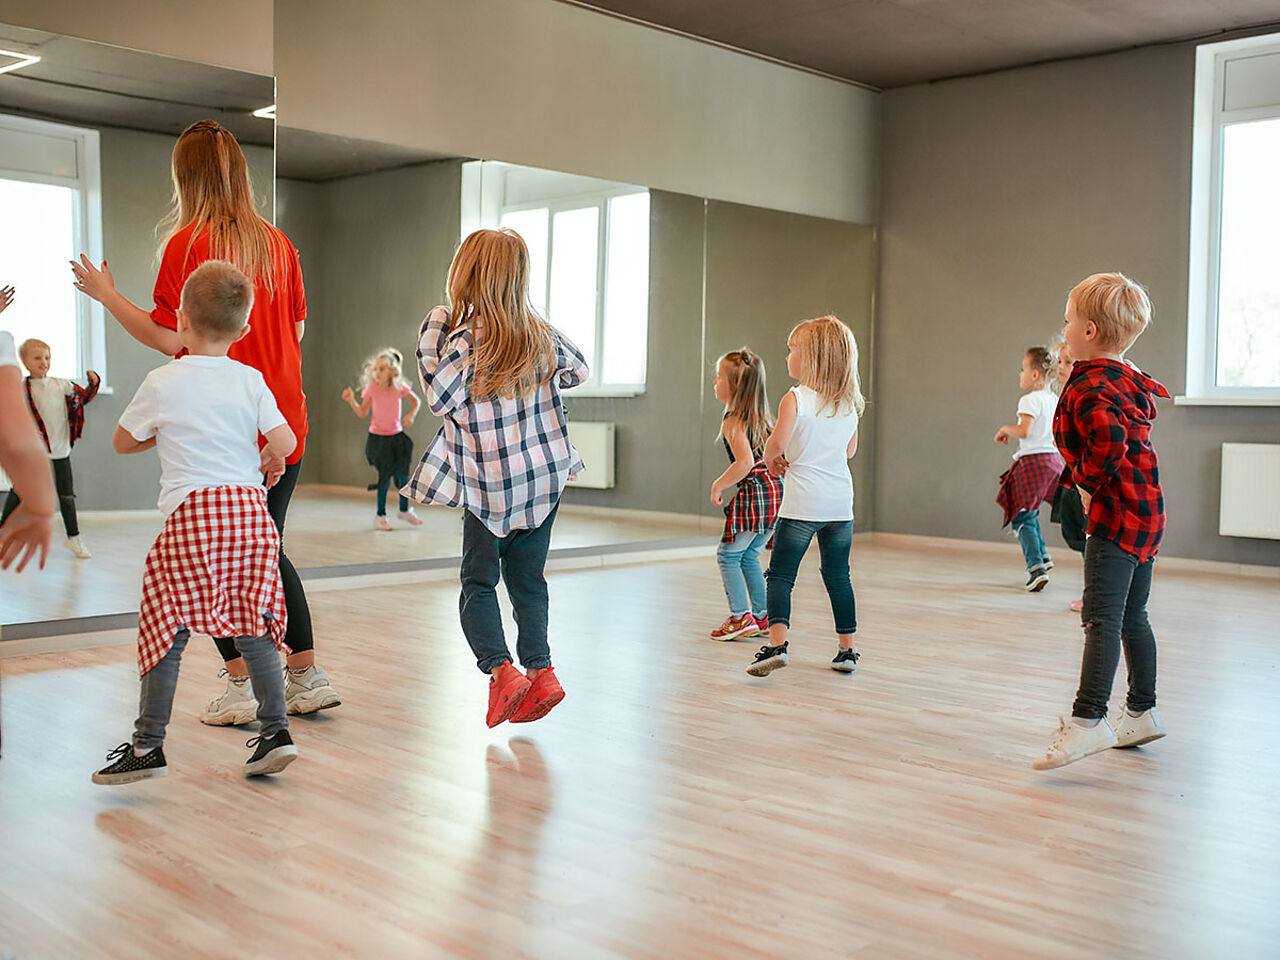 スタジオで講師の後ろでダンスの練習をしている小さい子どもたちの画像